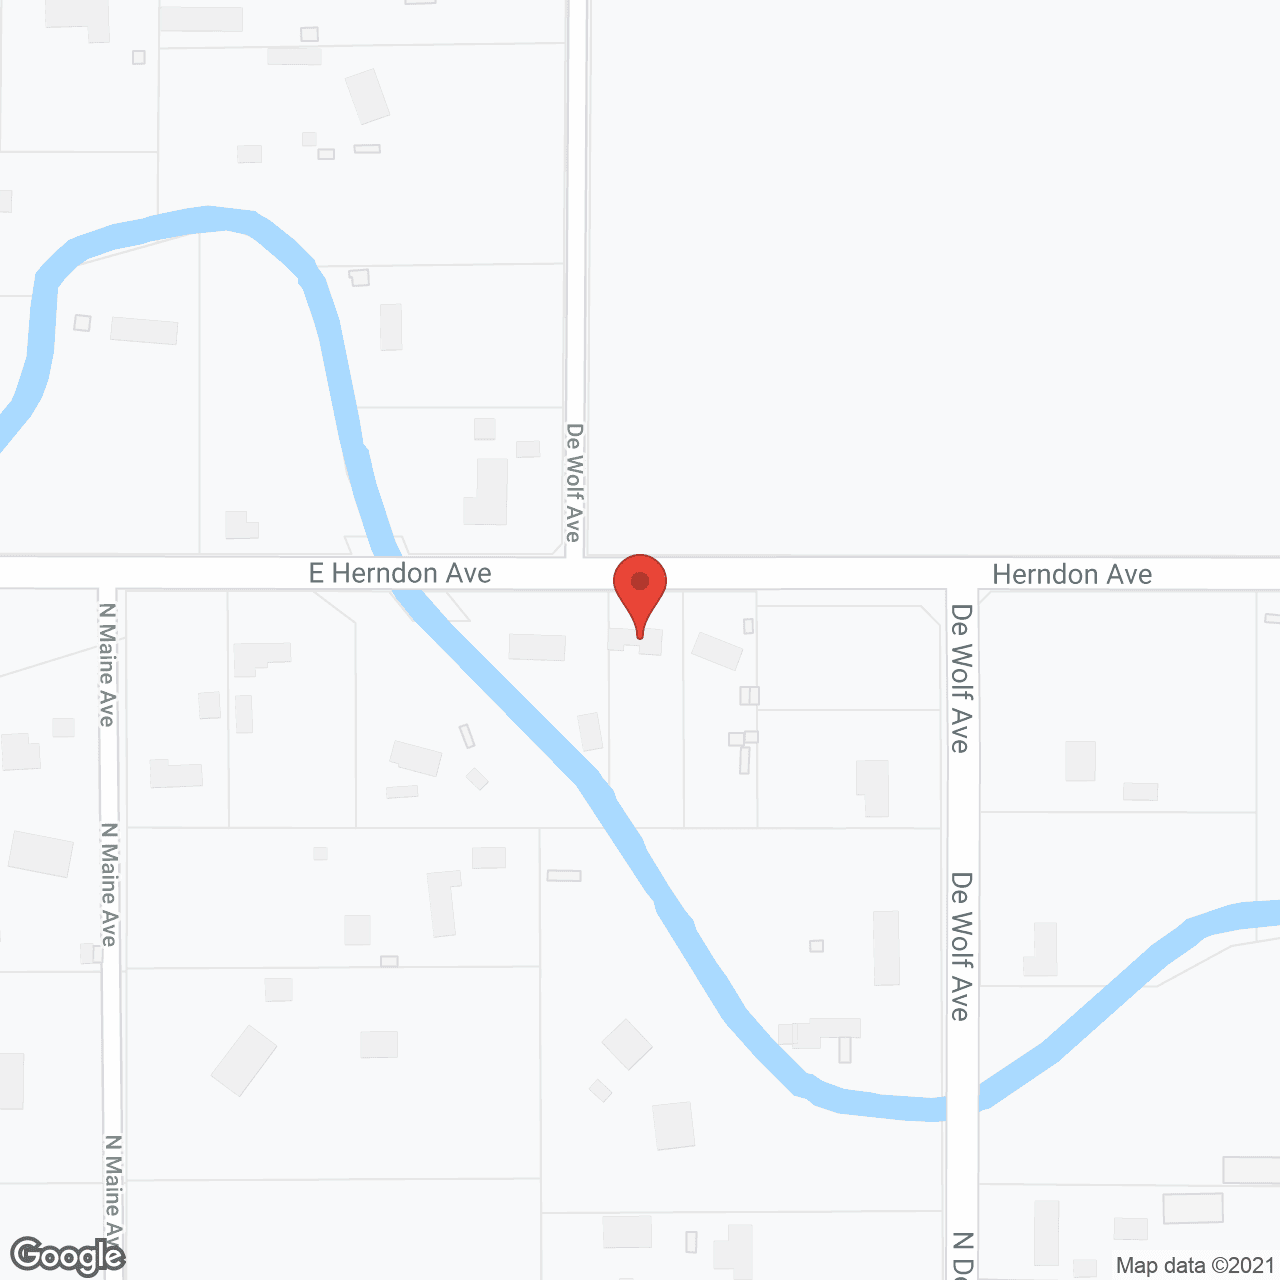 Clovis Guest Home in google map